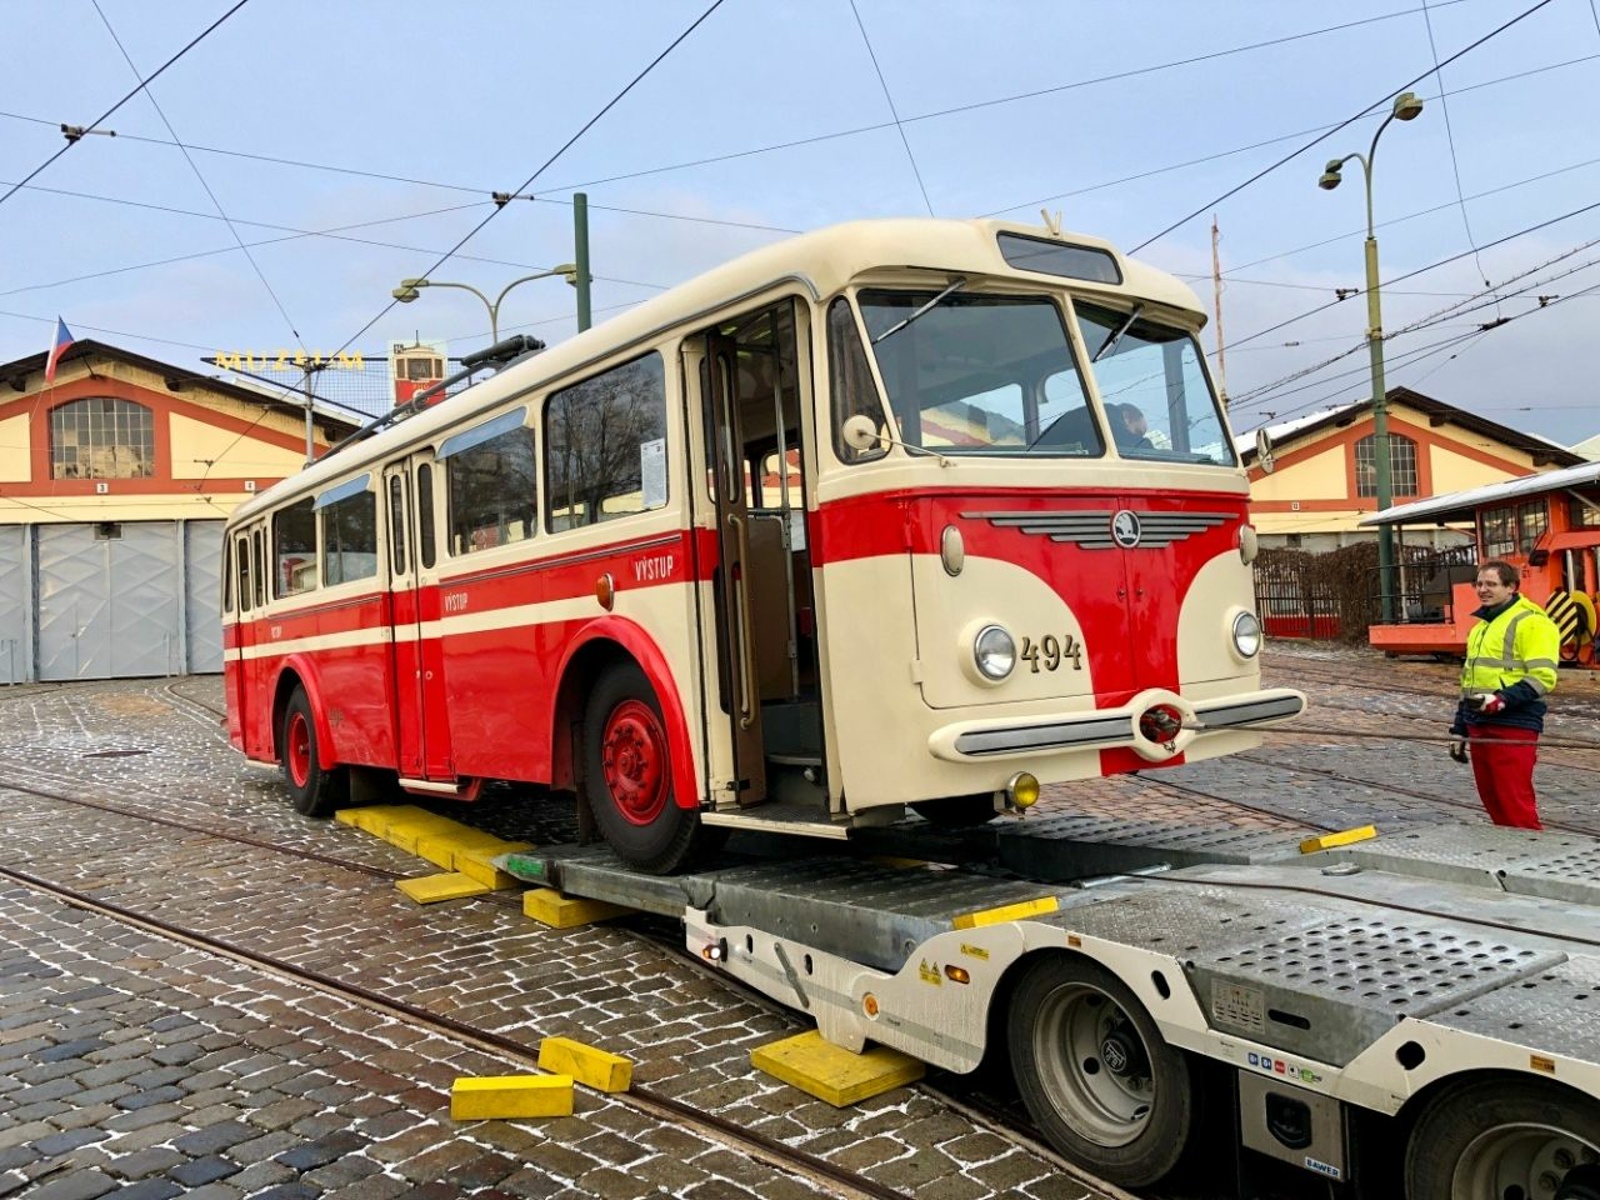 OBRAZEM: Trolejbusové přesuny v Praze. Vůz z roku 1959 čeká velká oprava -  Pražský deník